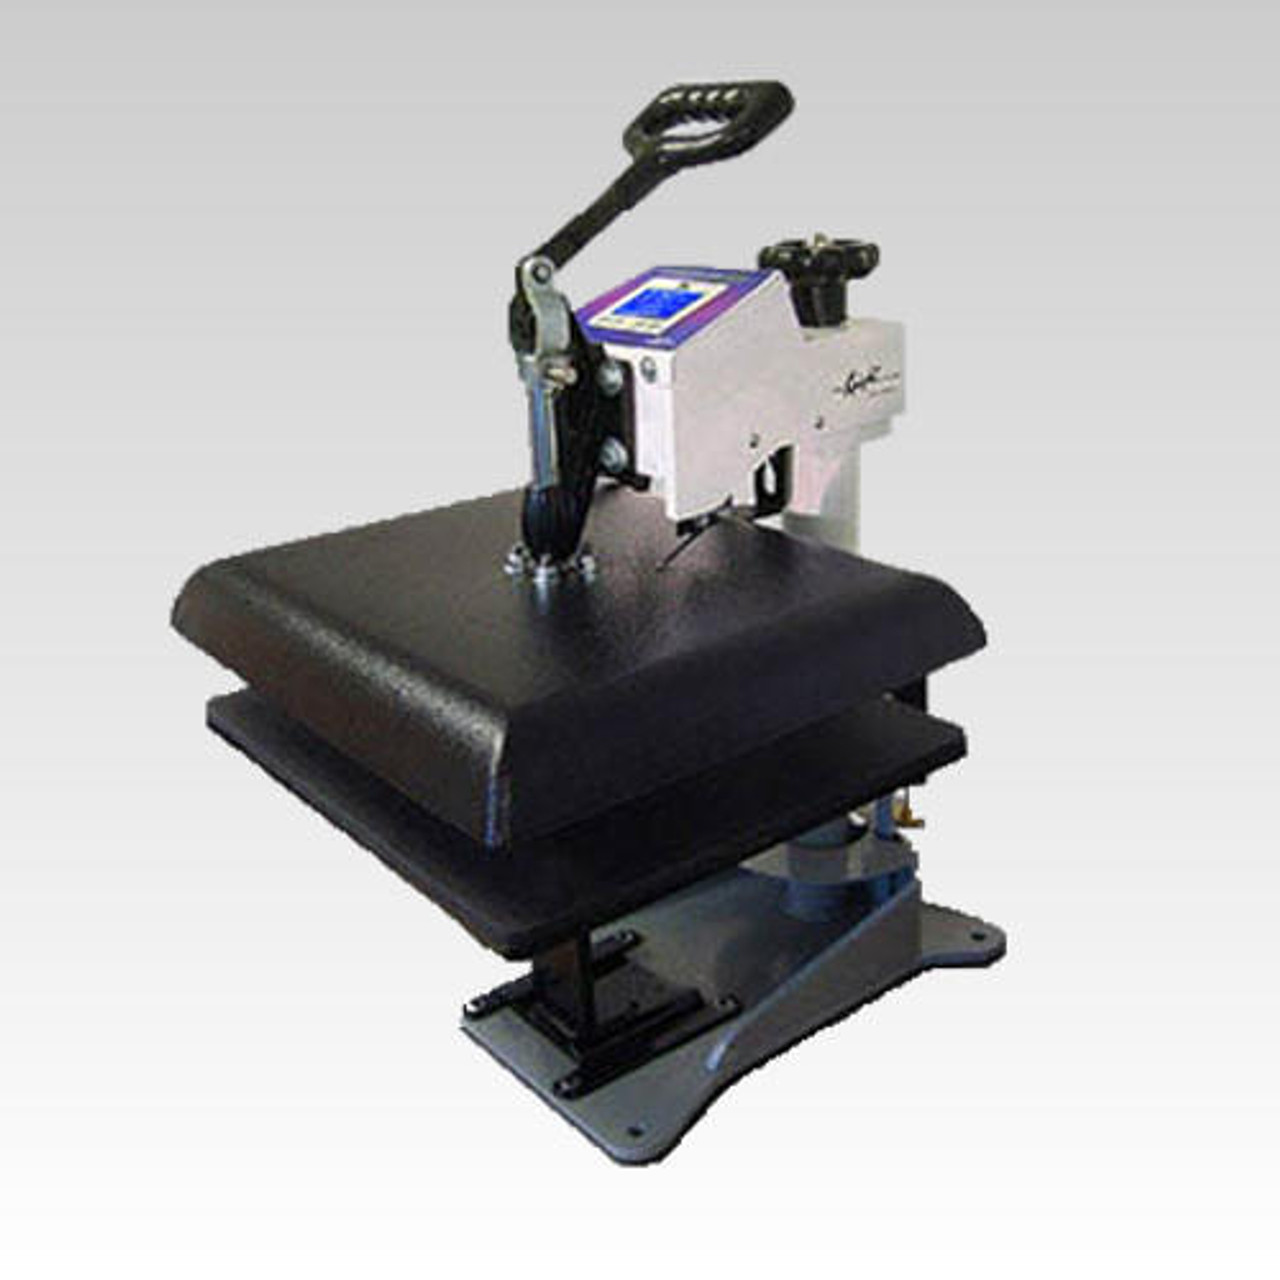 WALAPress V2 15x15 Manual Heat Press